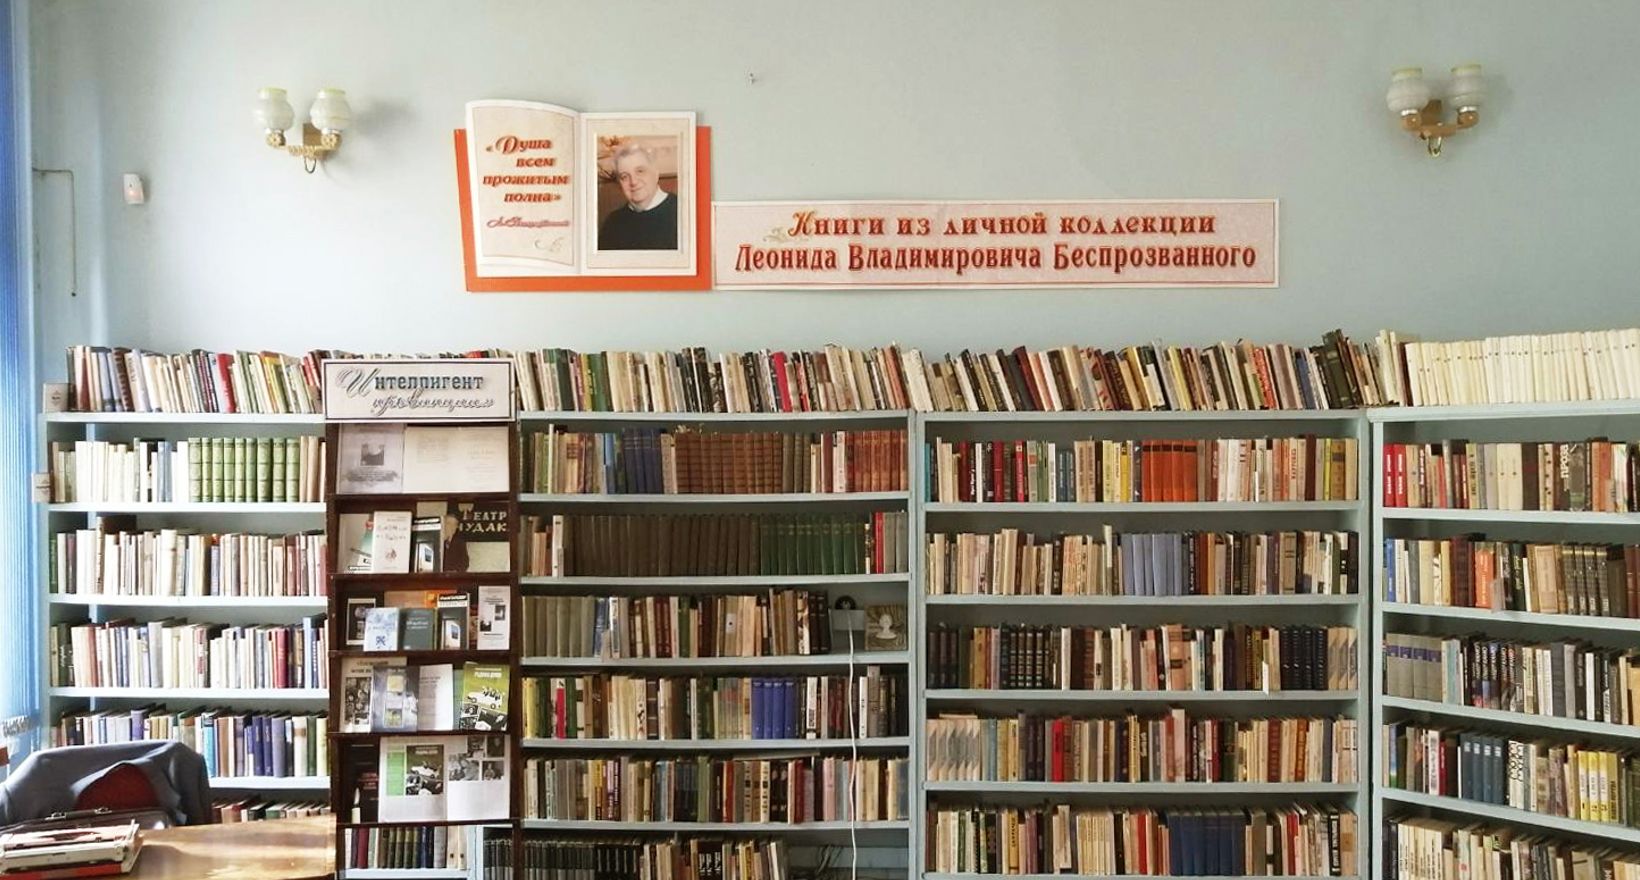 Ангарск. История. Библиотека